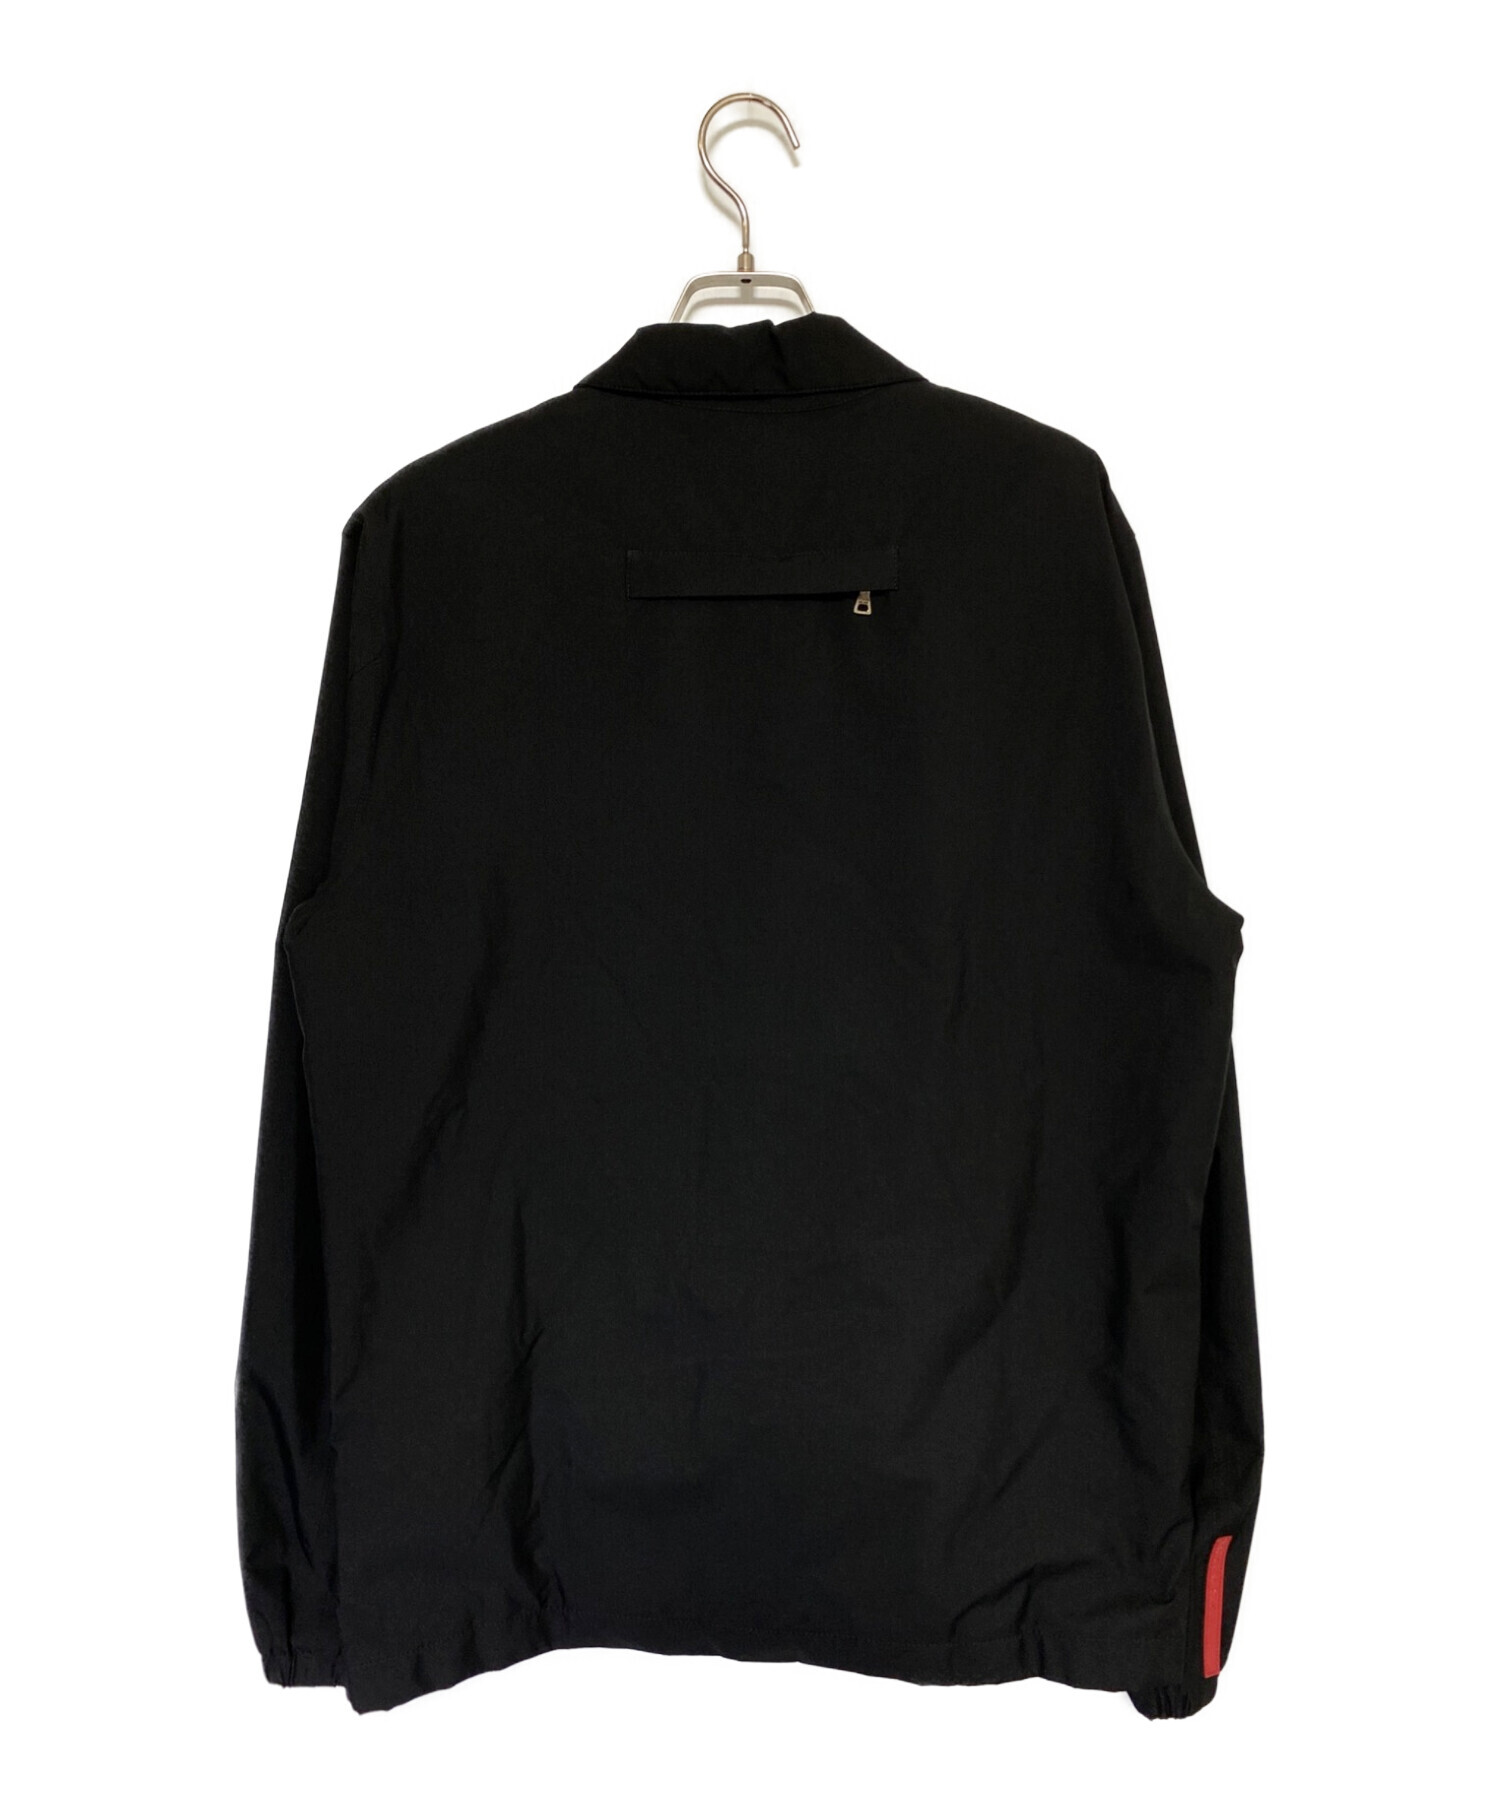 PRADA SPORTS (プラダスポーツ) シェルジャケット ブラック サイズ:48